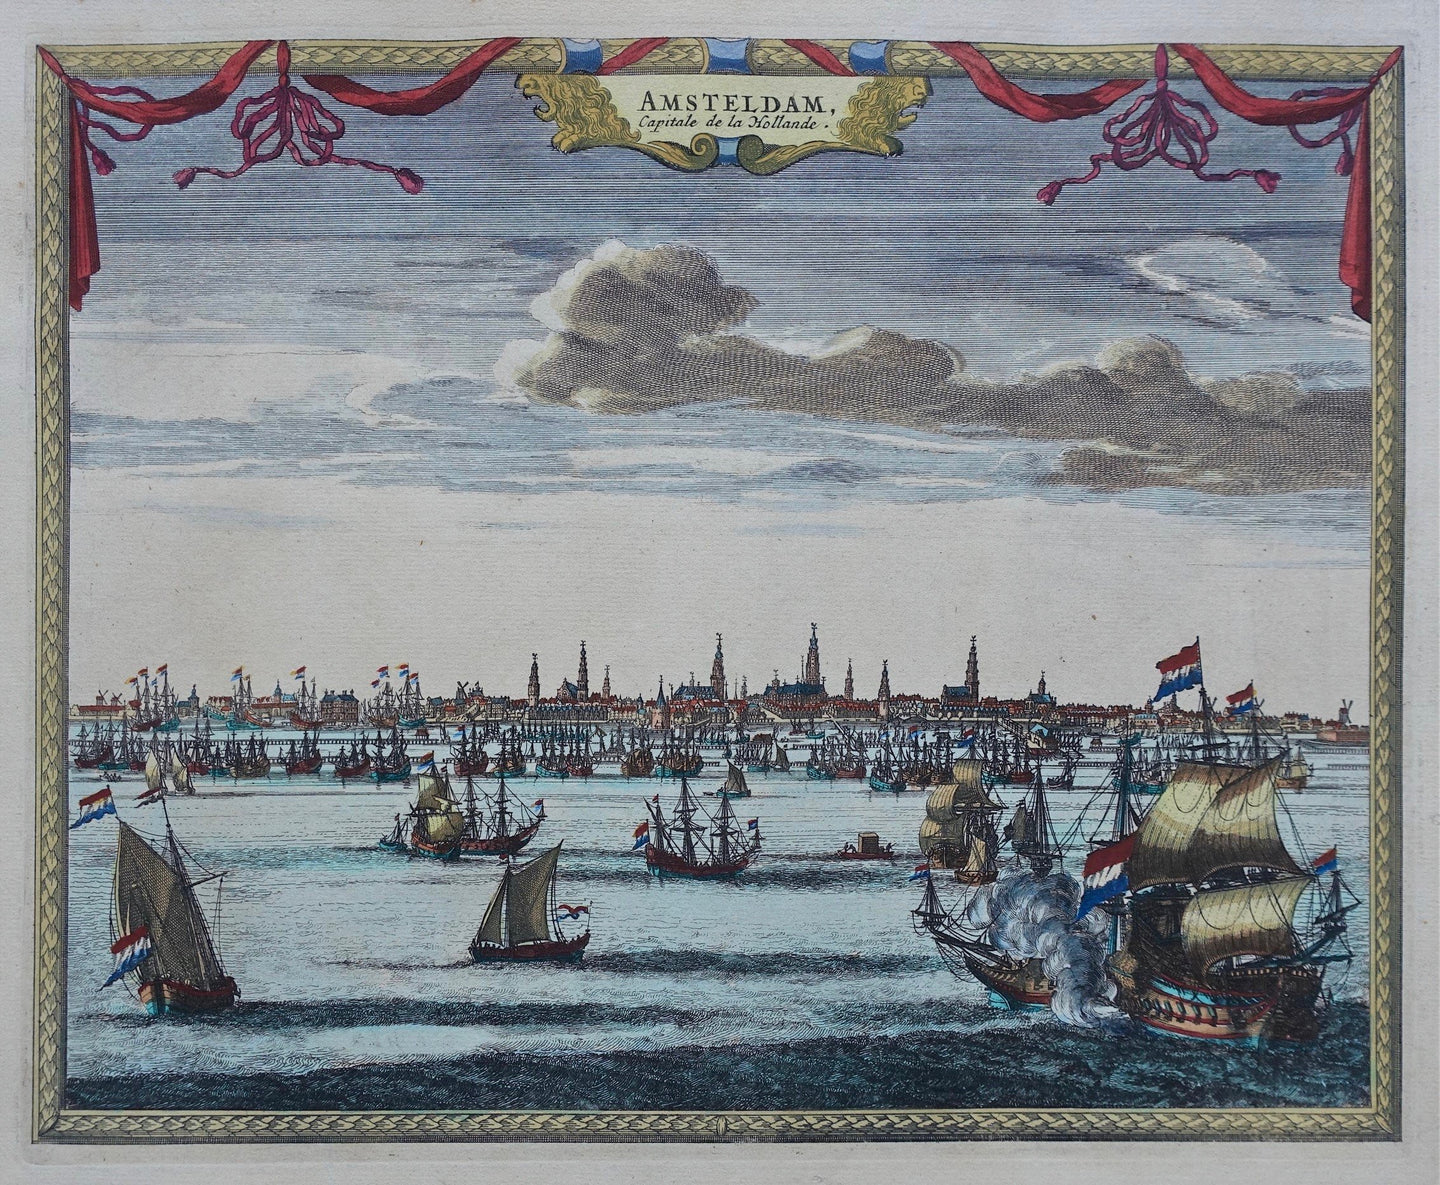 Amsterdam Aanzicht van de stad met het IJ op de voorgrond - P van der Aa - ca. 1725